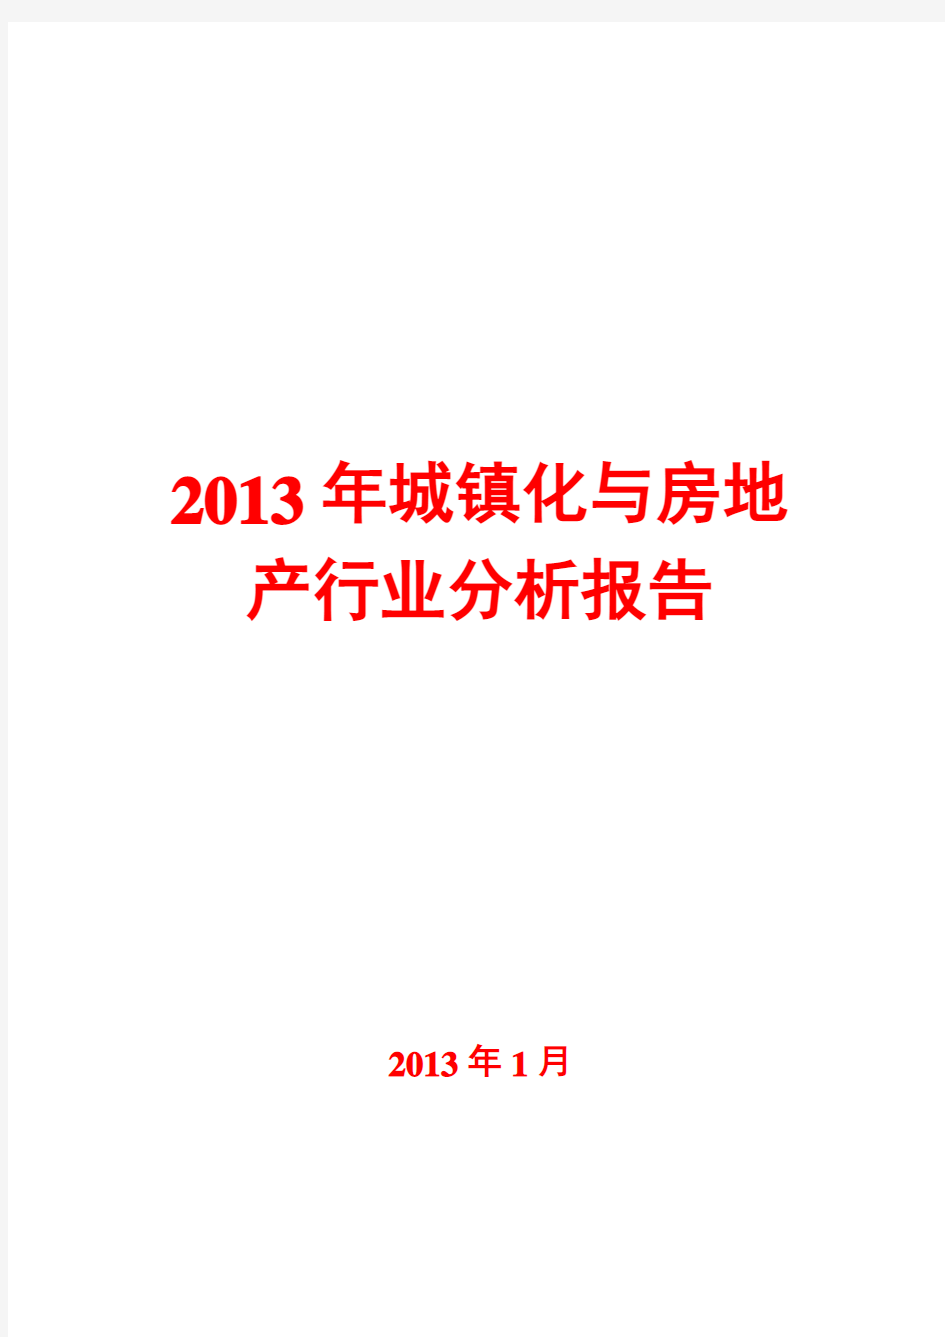 2013年城镇化与房地产行业分析报告